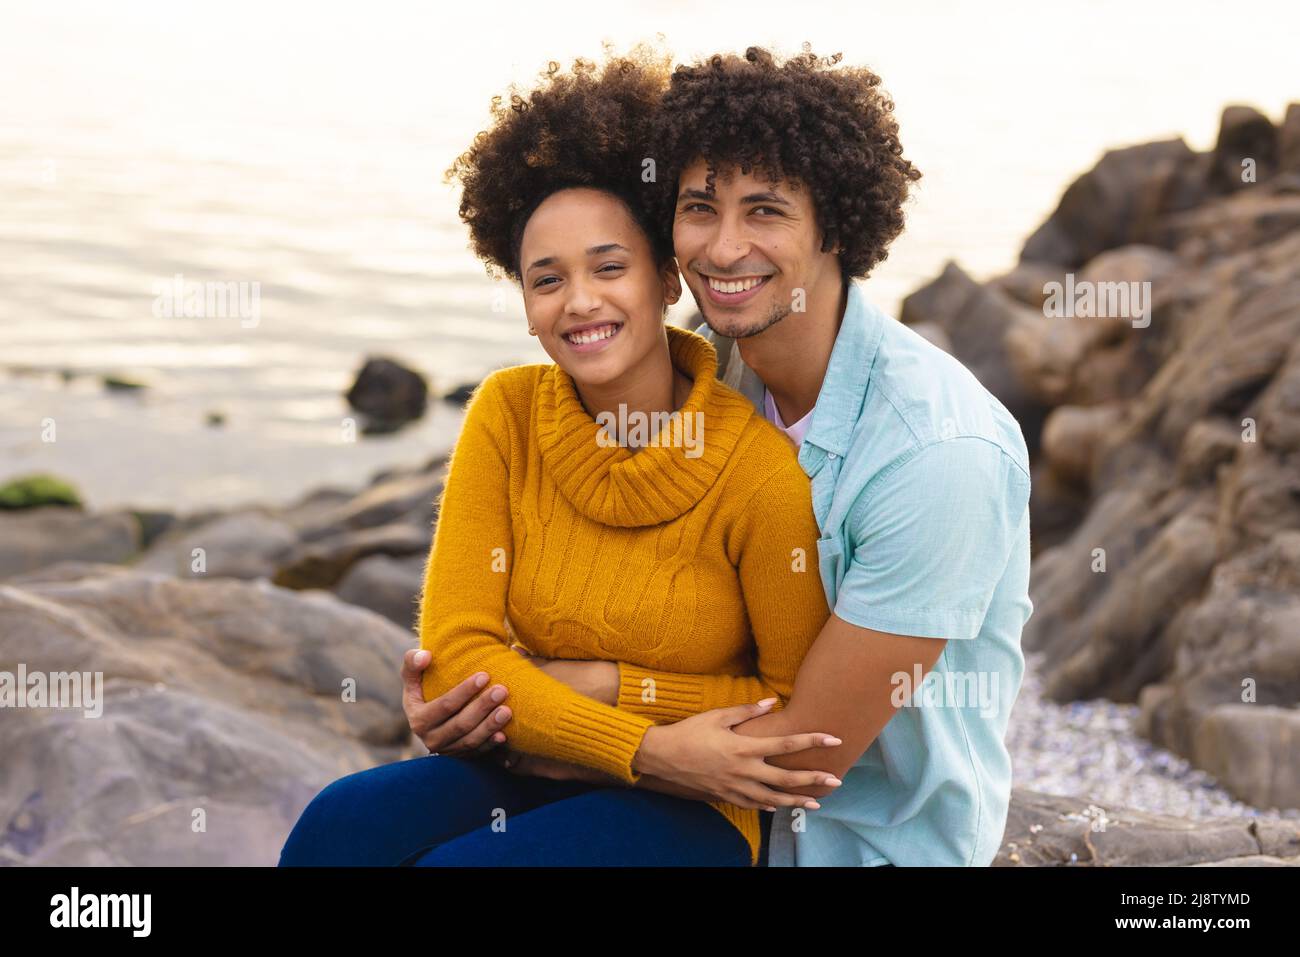 Porträt eines lächelnden afro-amerikanischen jungen Paares, das am Strand sitzt Stockfoto